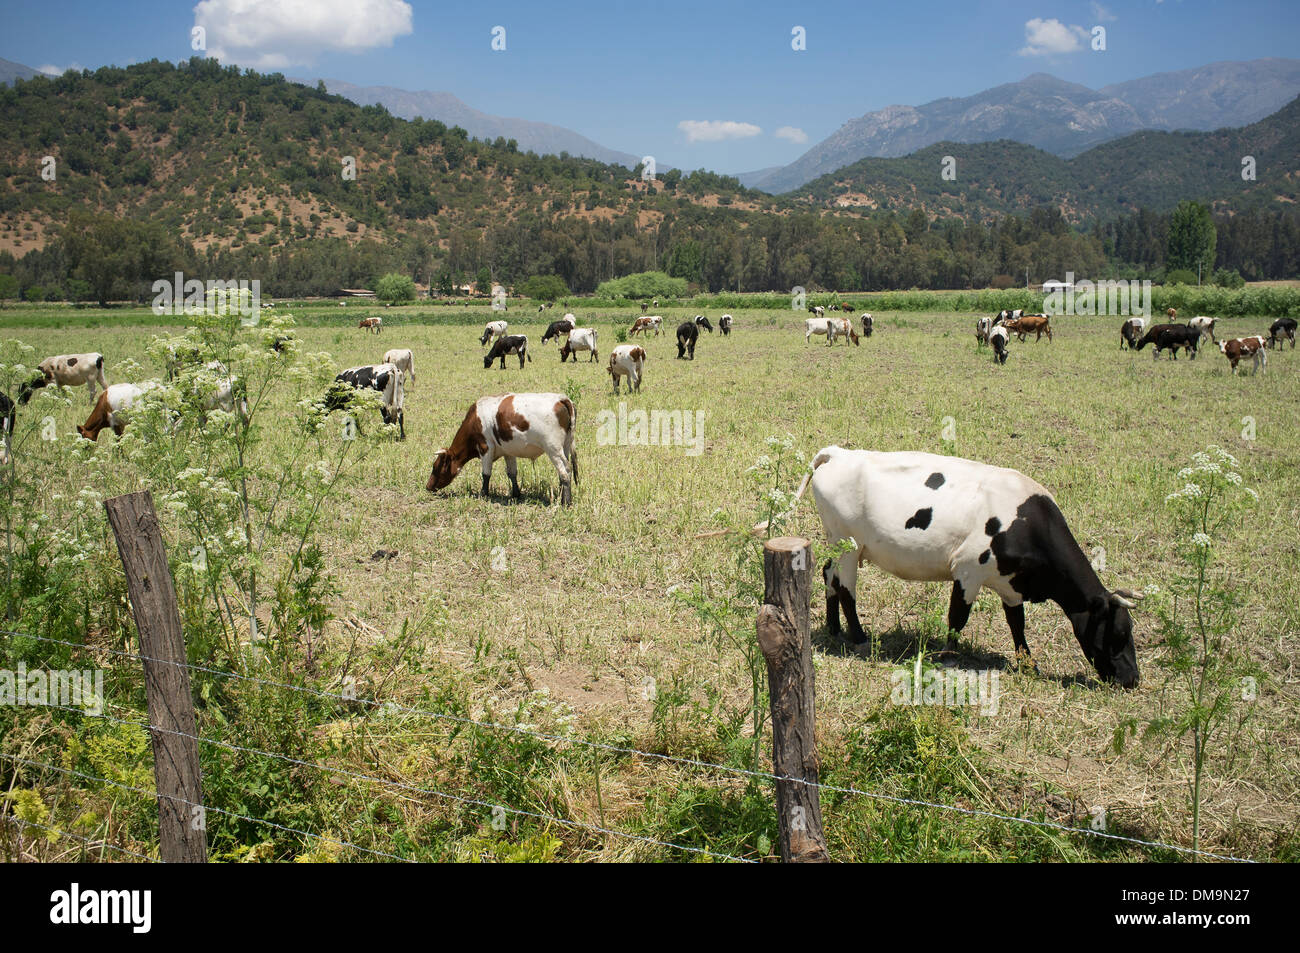 Le pâturage du bétail au pâturage durant l'été Banque D'Images